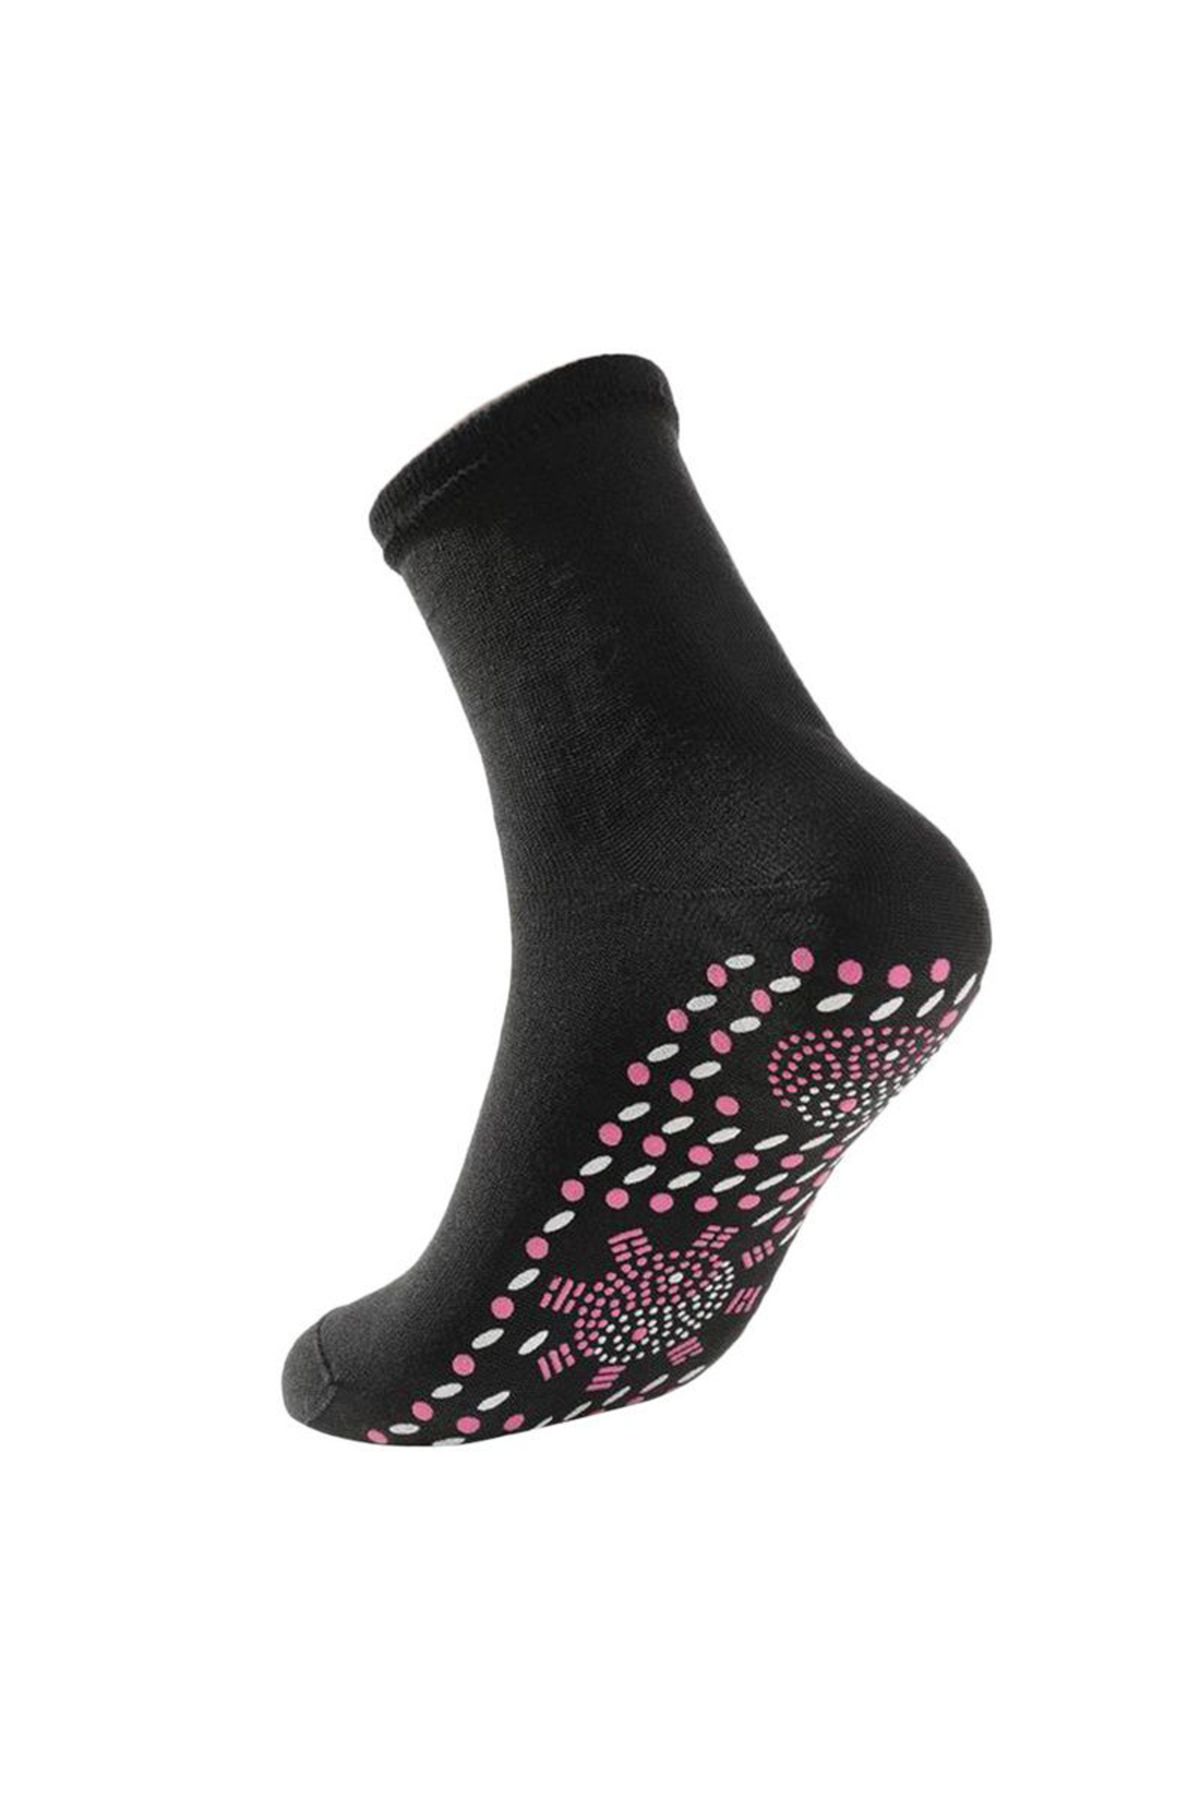 Skygo Kışlık Kalın Termal Çorap Siyah Standart Beden